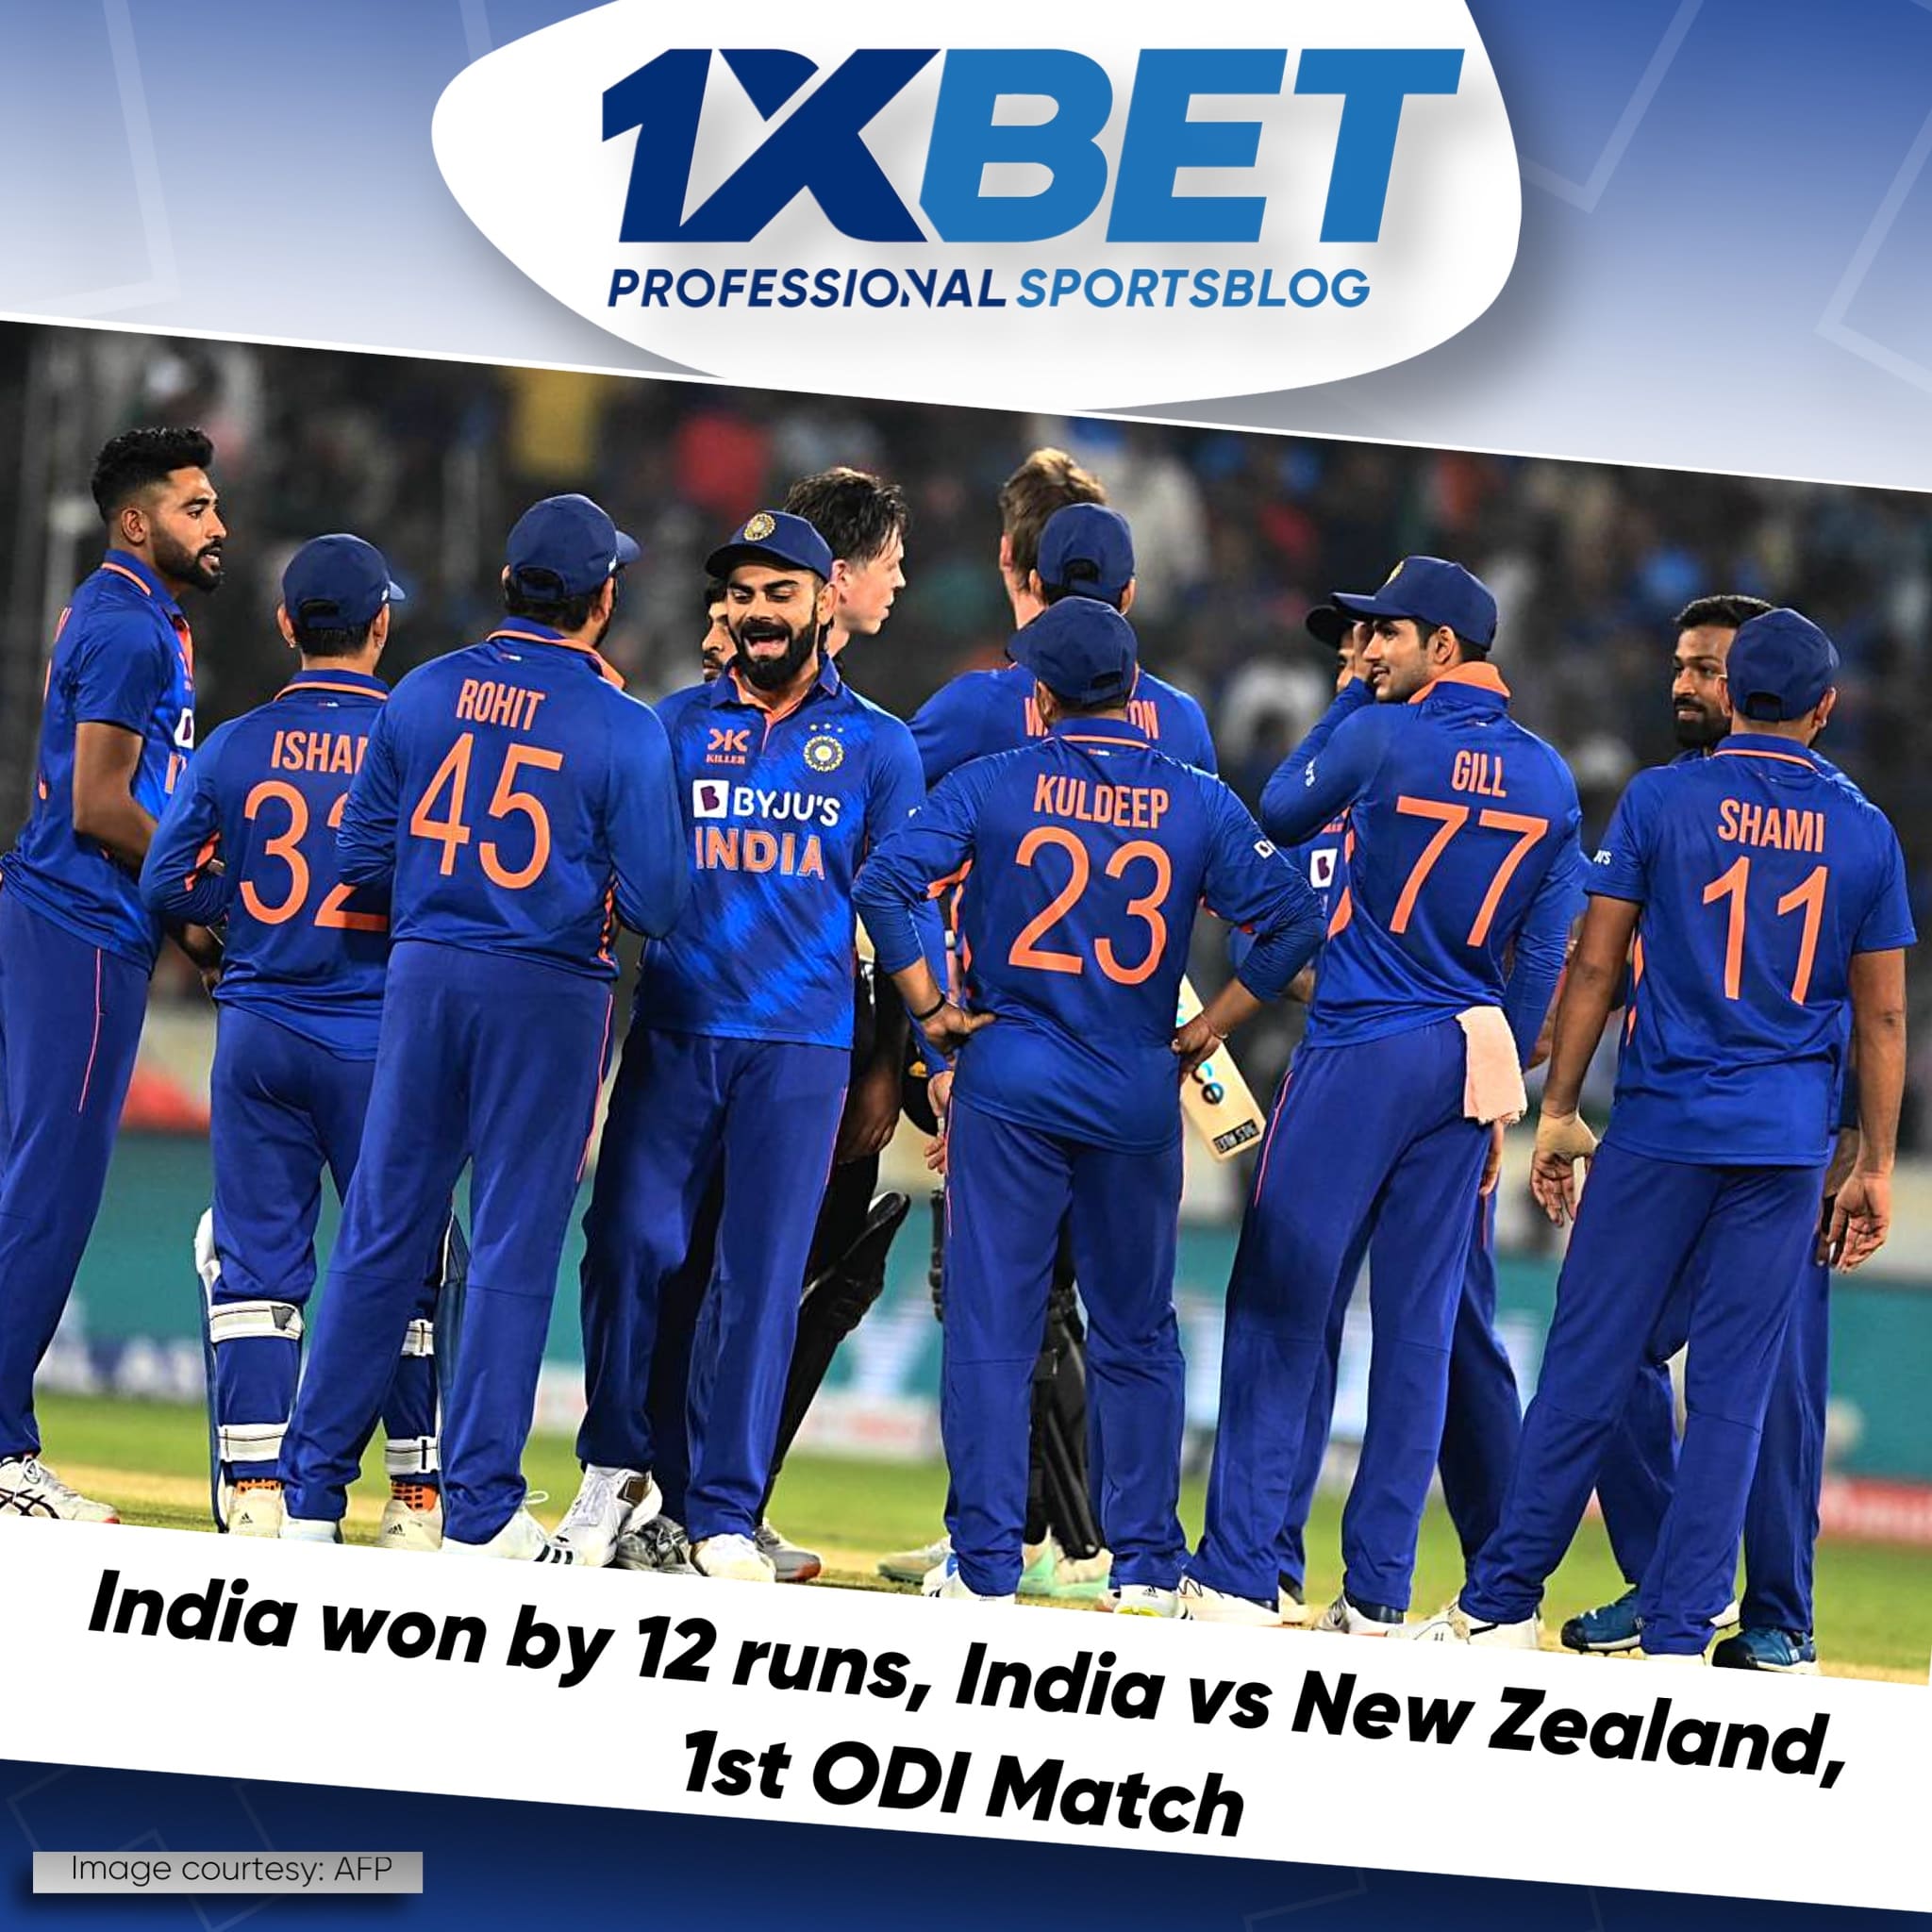 India won by 12 runs, India vs New Zealand, 1st ODI Match